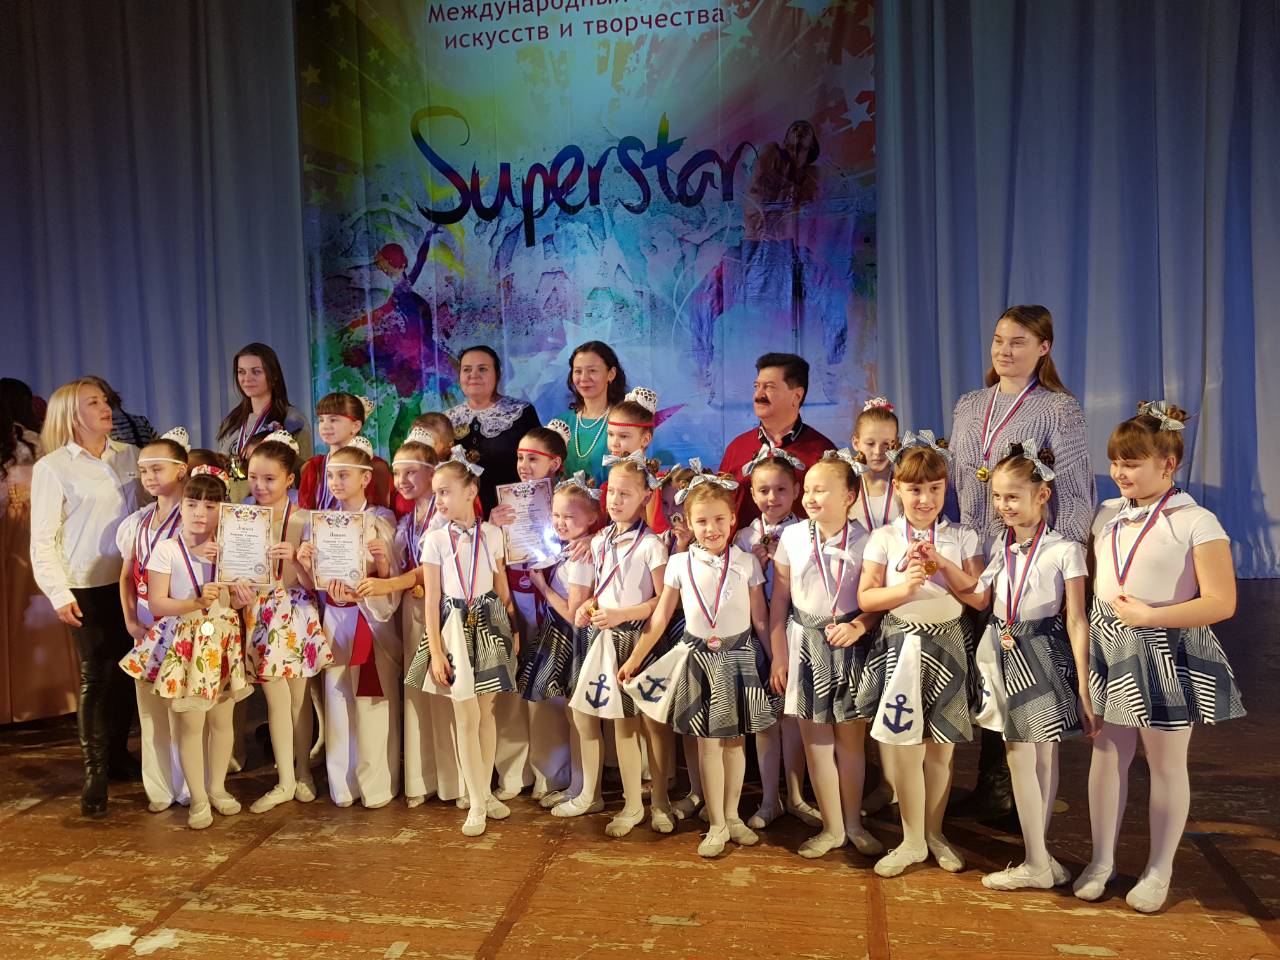 Воспитанники средней группы ансамбля эстрадного танца «Prodance» впервые приняли участие в Международном конкурсе.